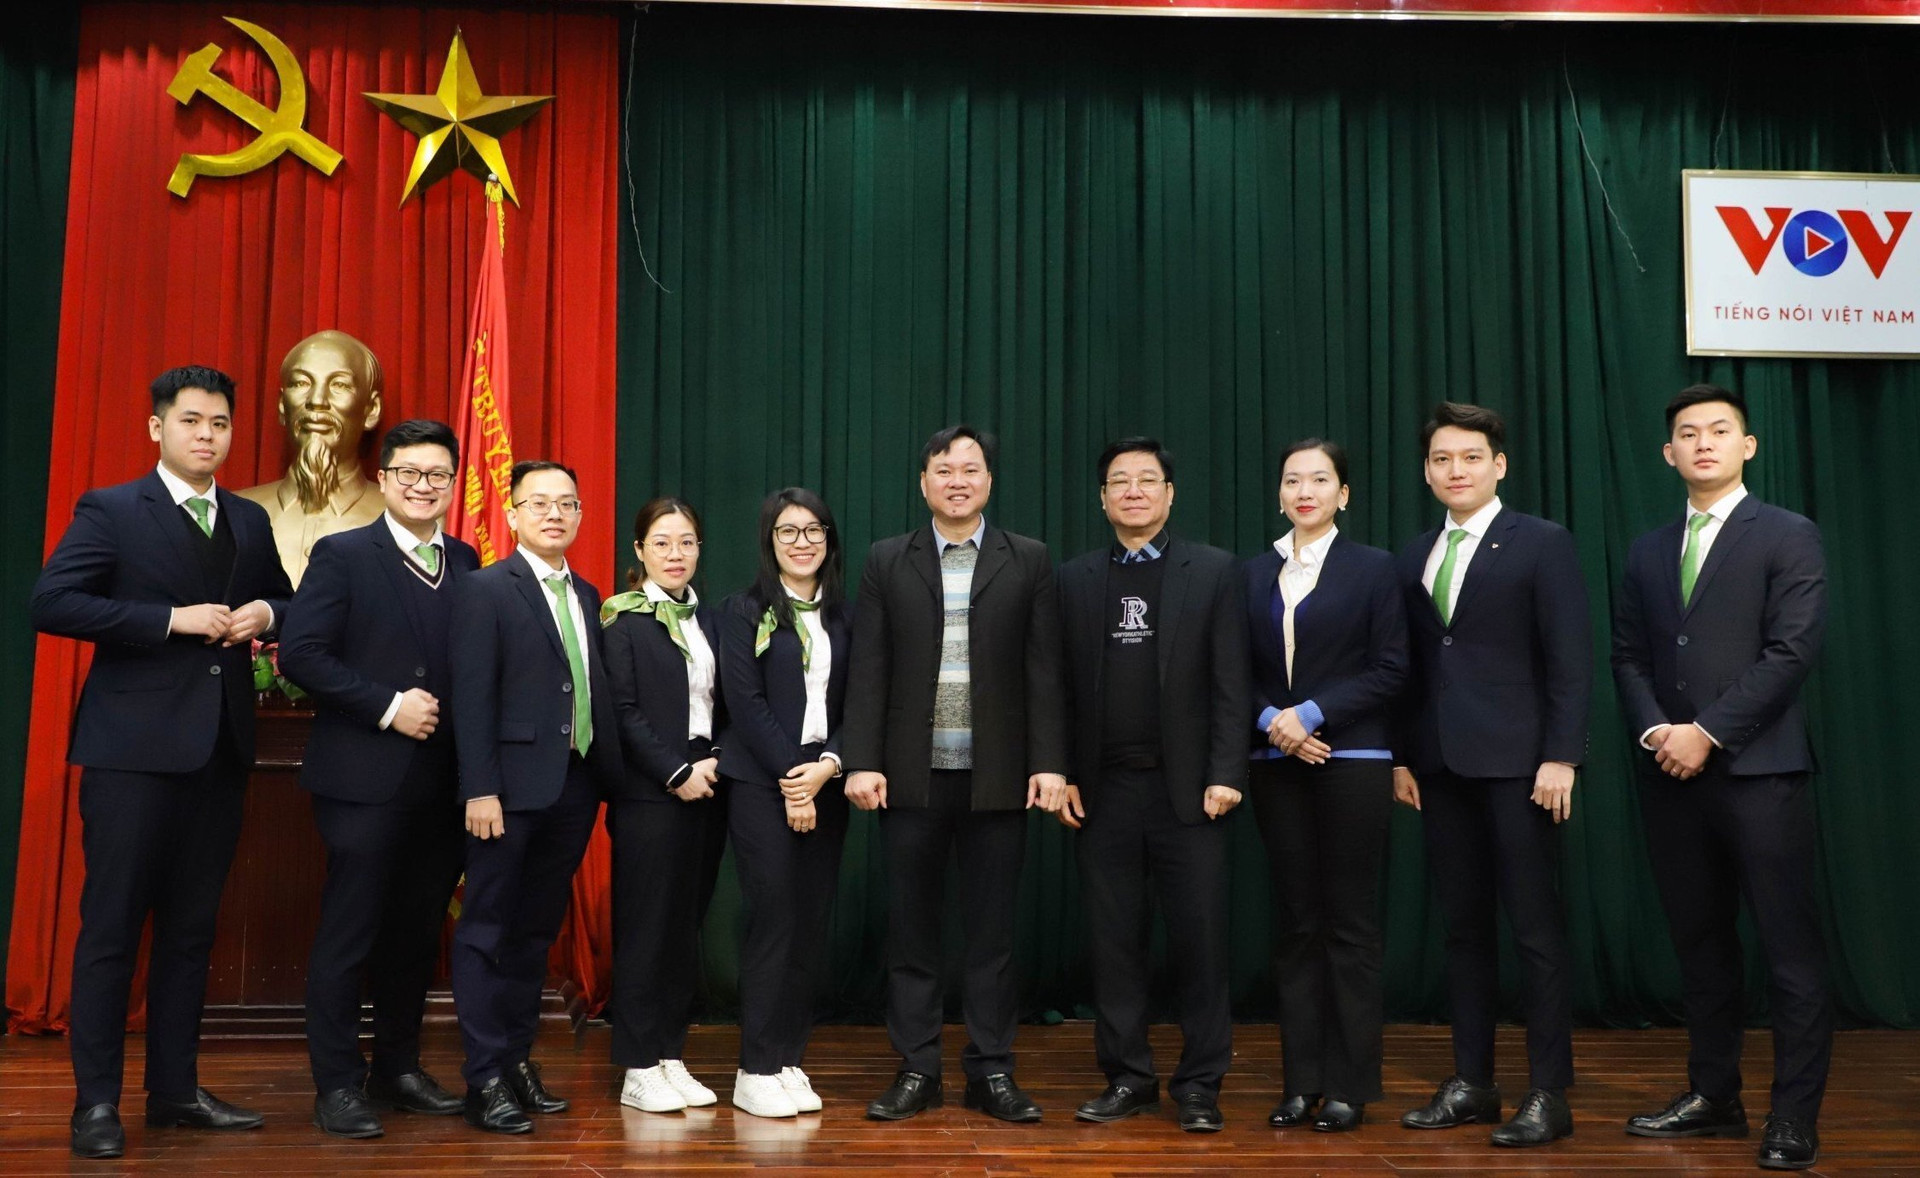 Ban giám hiệu nhà trường và cán bộ, nhân viên Vietcombank Hà Thành mong muốn tiếp tục có nhiều hoạt động gắn kết hơn nữa.